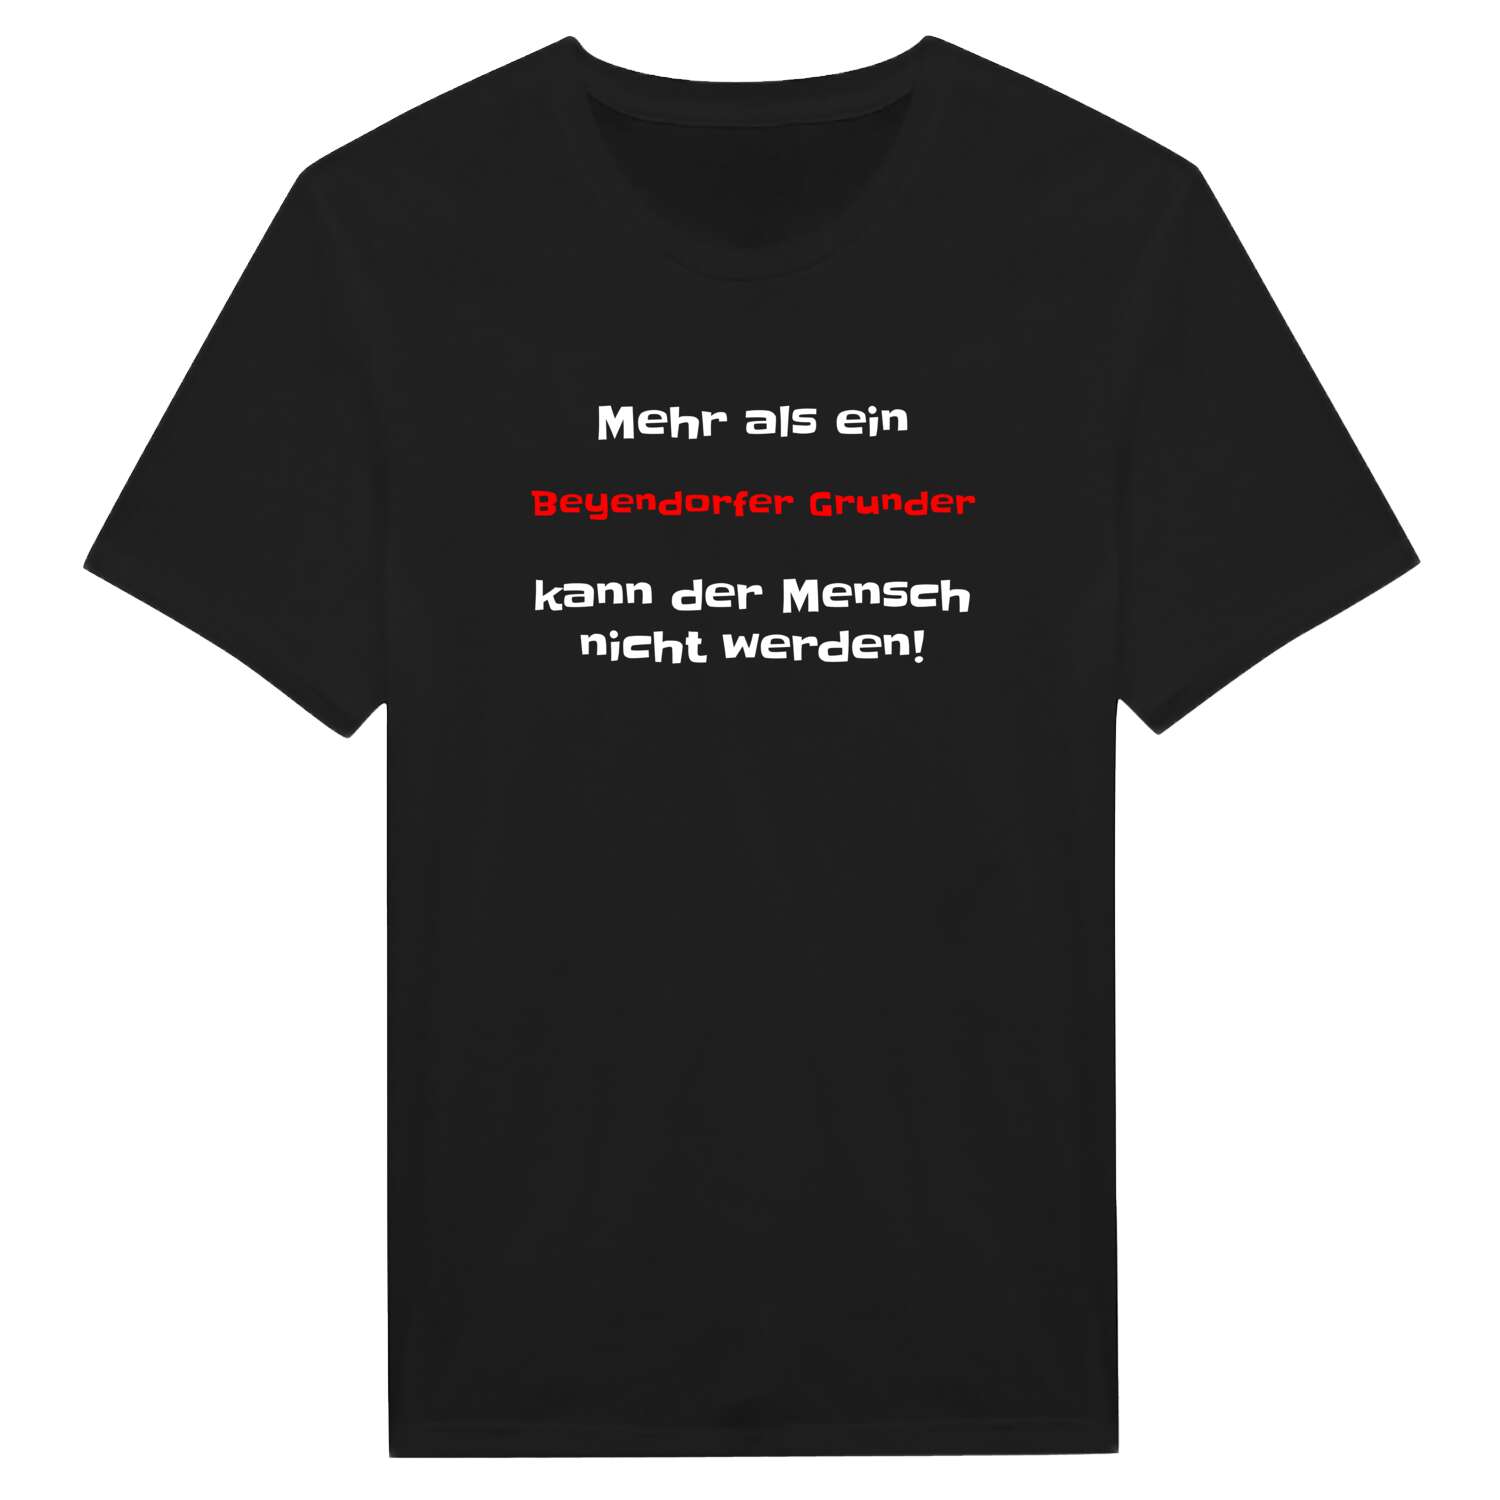 Beyendorfer Grund T-Shirt »Mehr als ein«